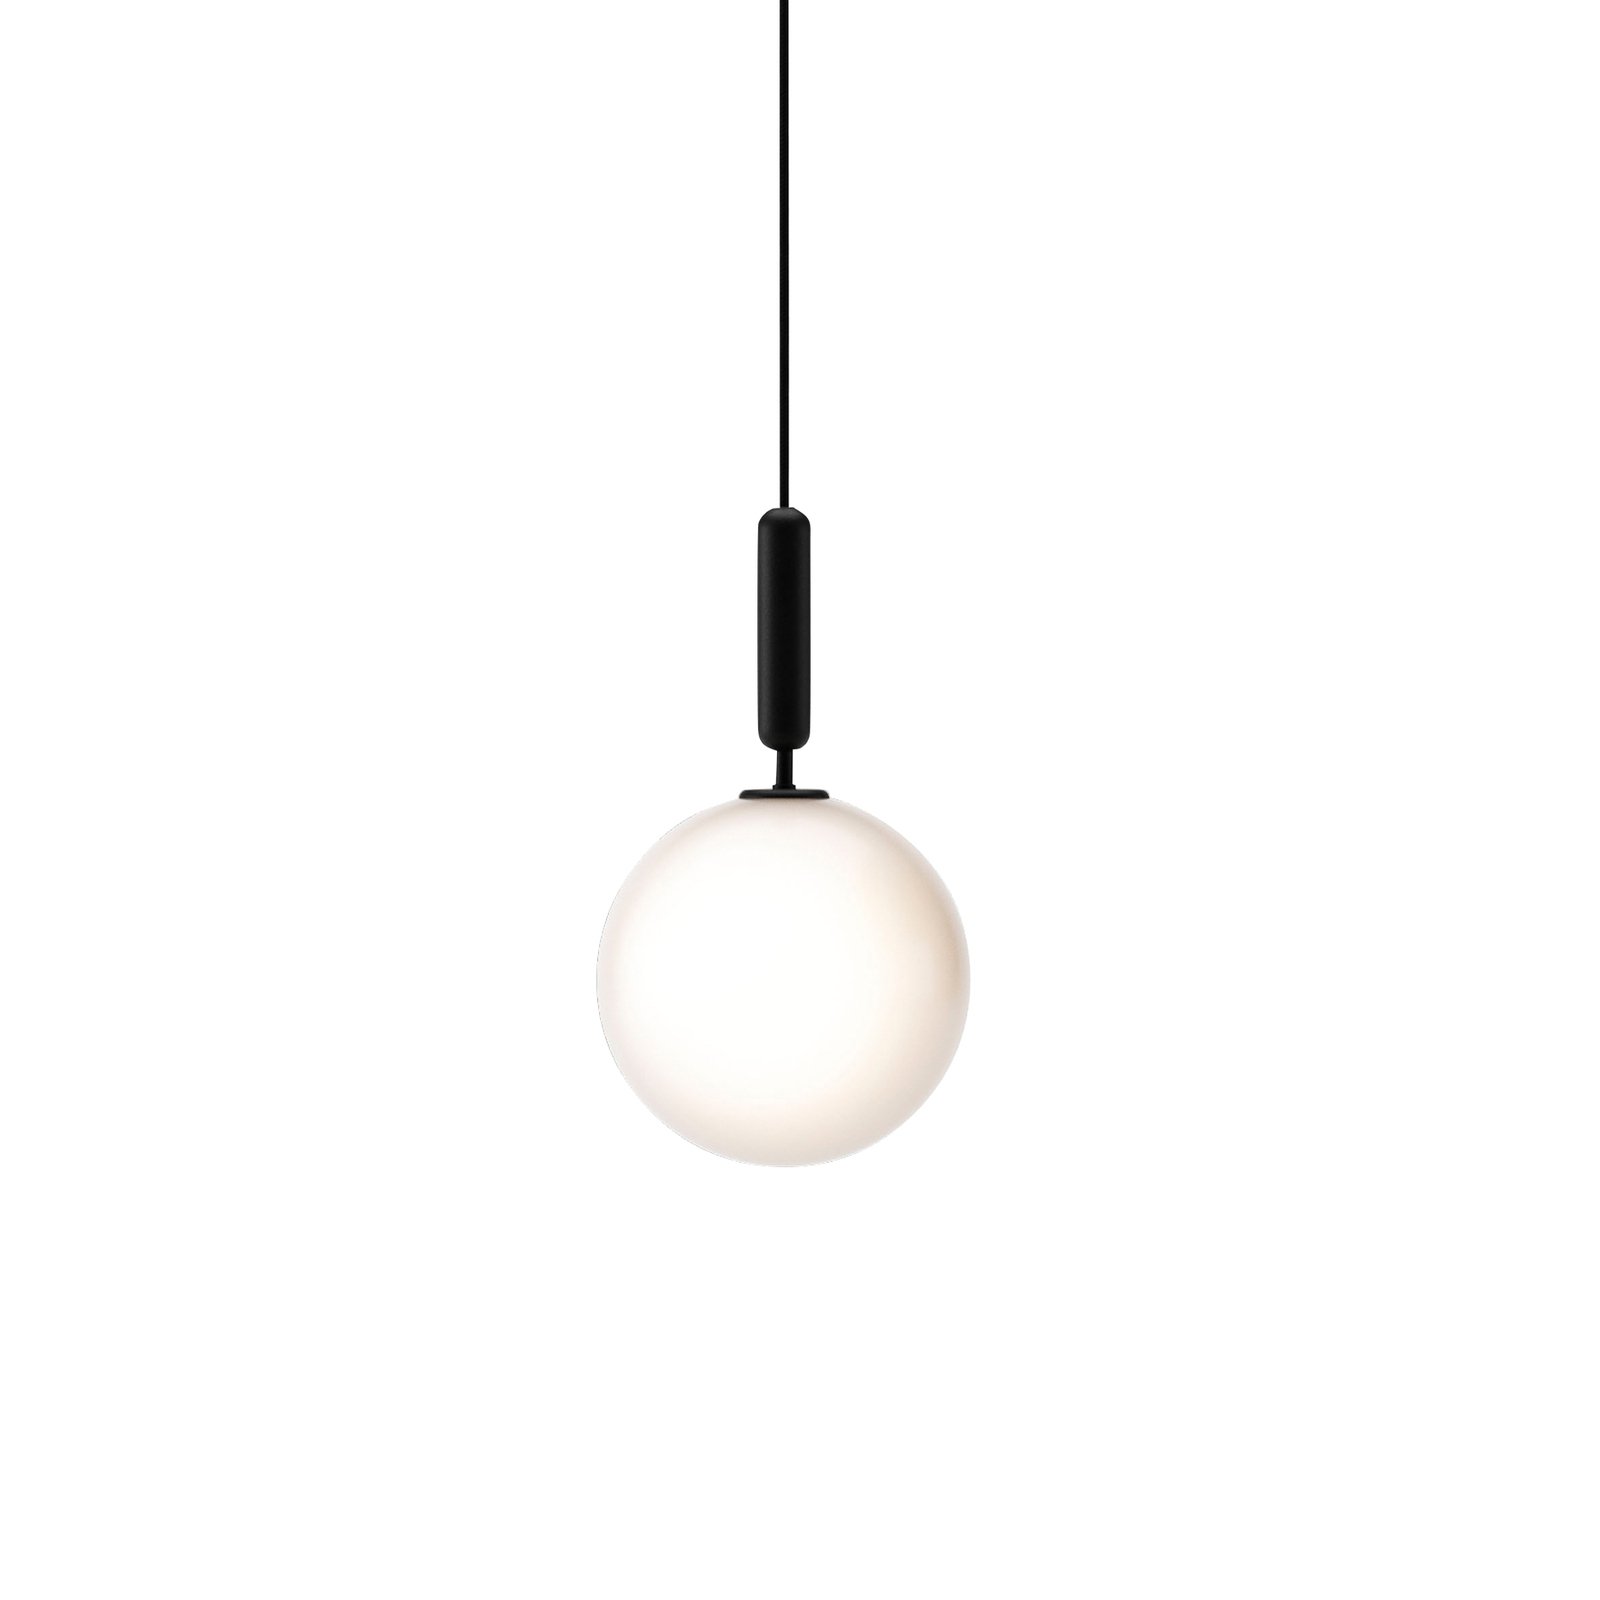 Nuura Miira 1 Large hanging lamp 1-bulb grey/white